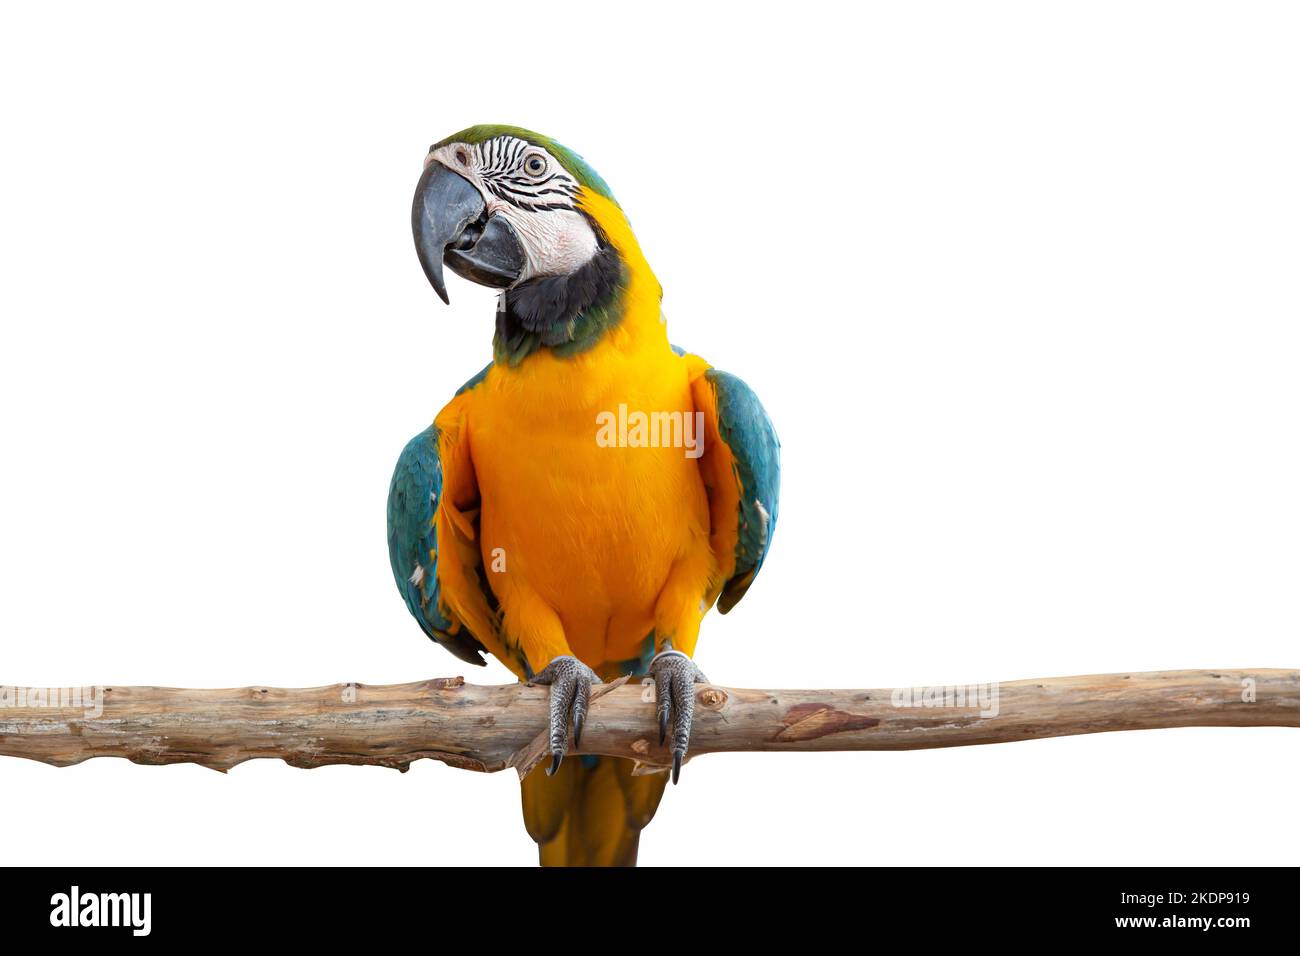 guacamayo loro pájaro sonrisa captura en madera árbol rama animal colorido aislado sobre fondo blanco con camino de recorte Foto de stock